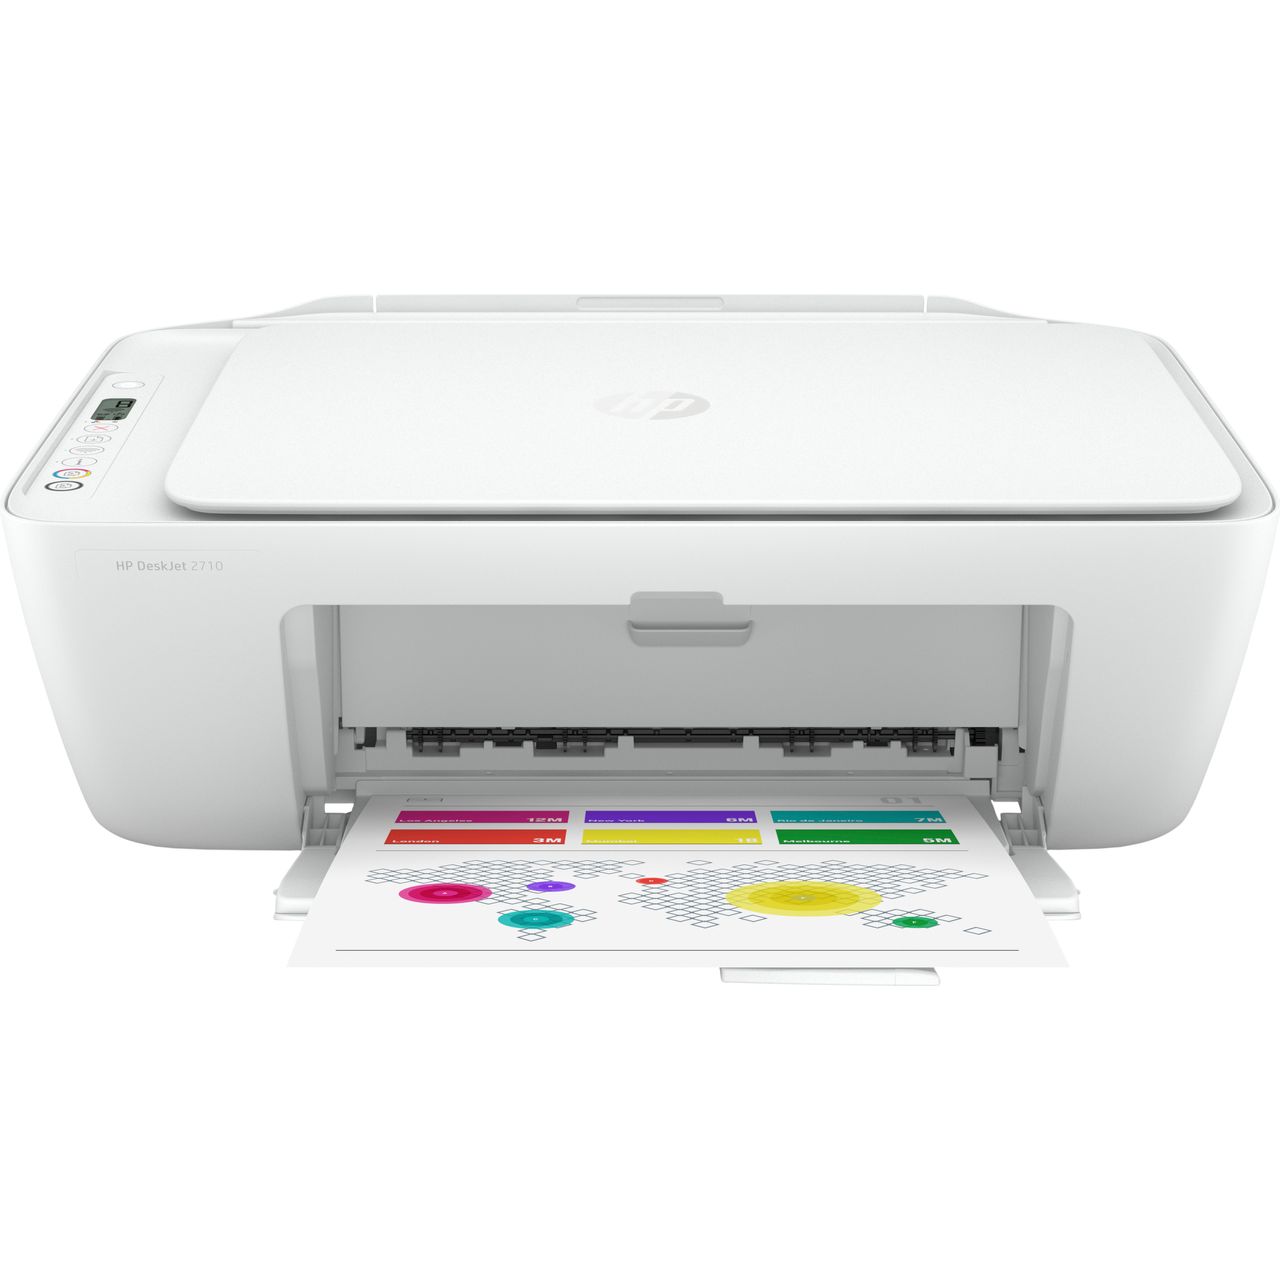 HP Deskjet 2710 Inkjet Printer Review